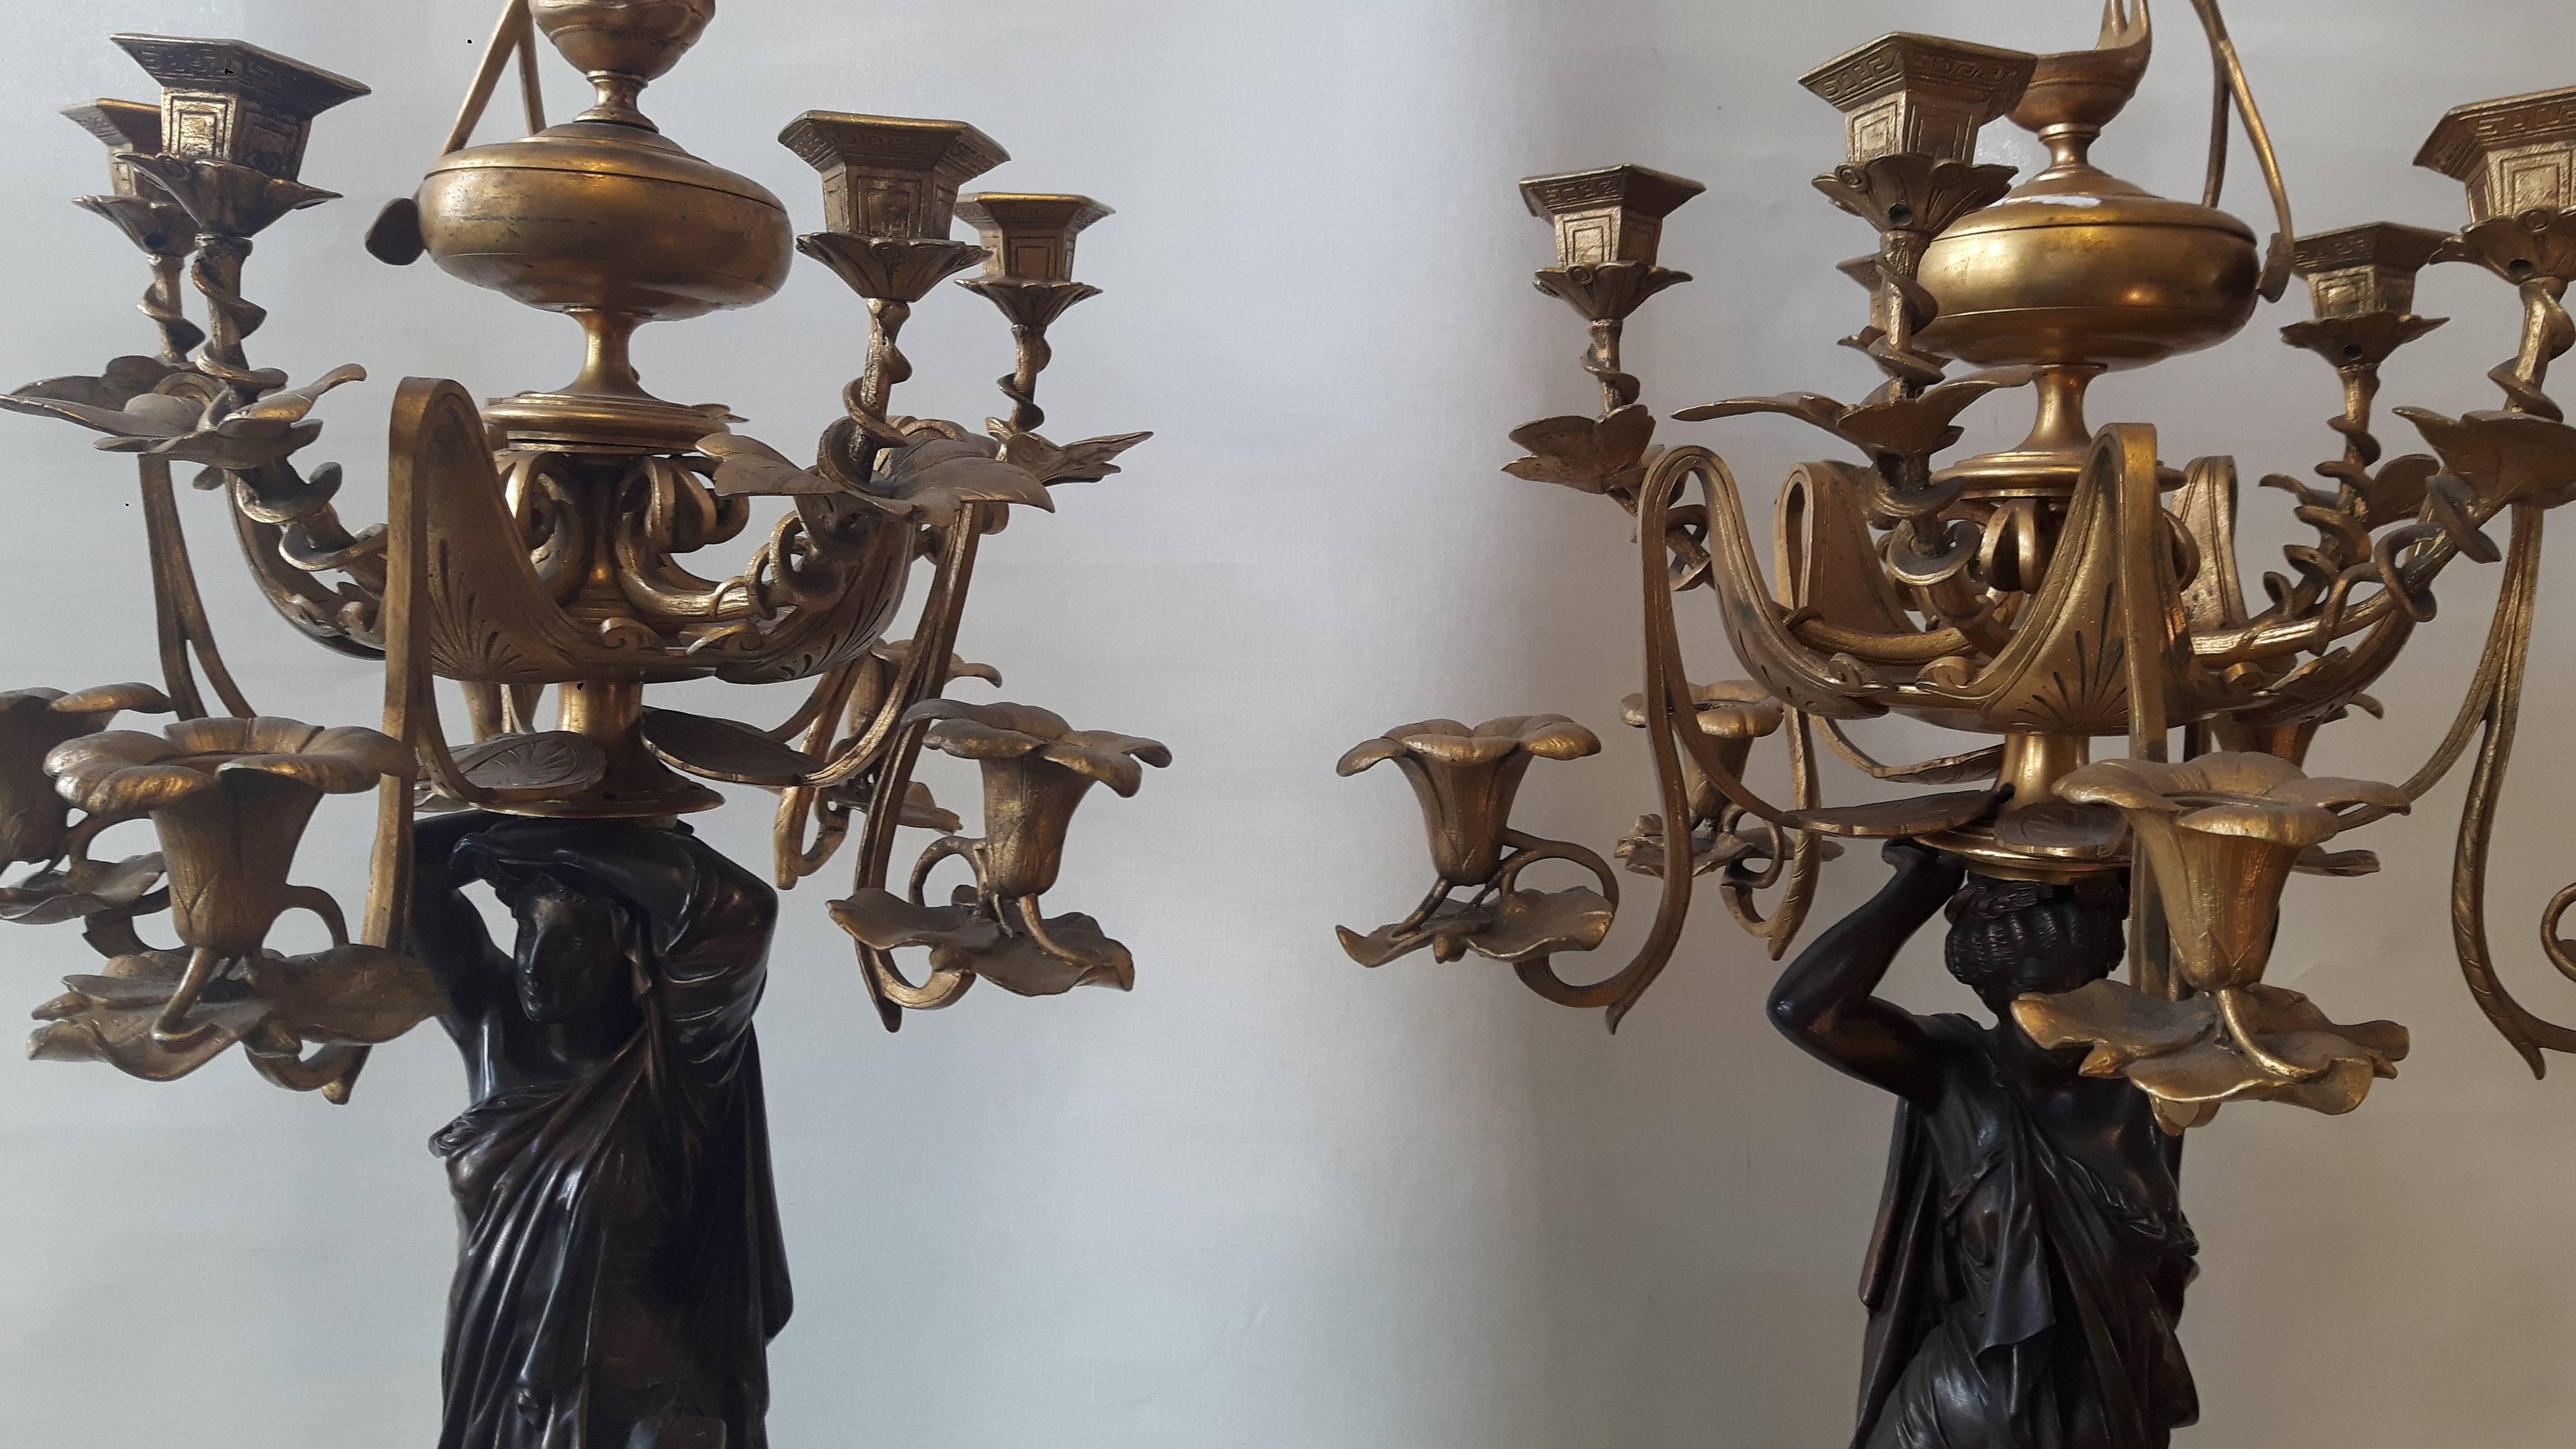 Ein sehr großes Paar bronzener und vergoldeter Kandelaber in Form von griechischen Wasserträgern. Die Figuren ruhen auf einem dreibeinigen Sockel, dessen Füße als Löwenfüße dargestellt sind, die von Adlerköpfen geschmückt werden.